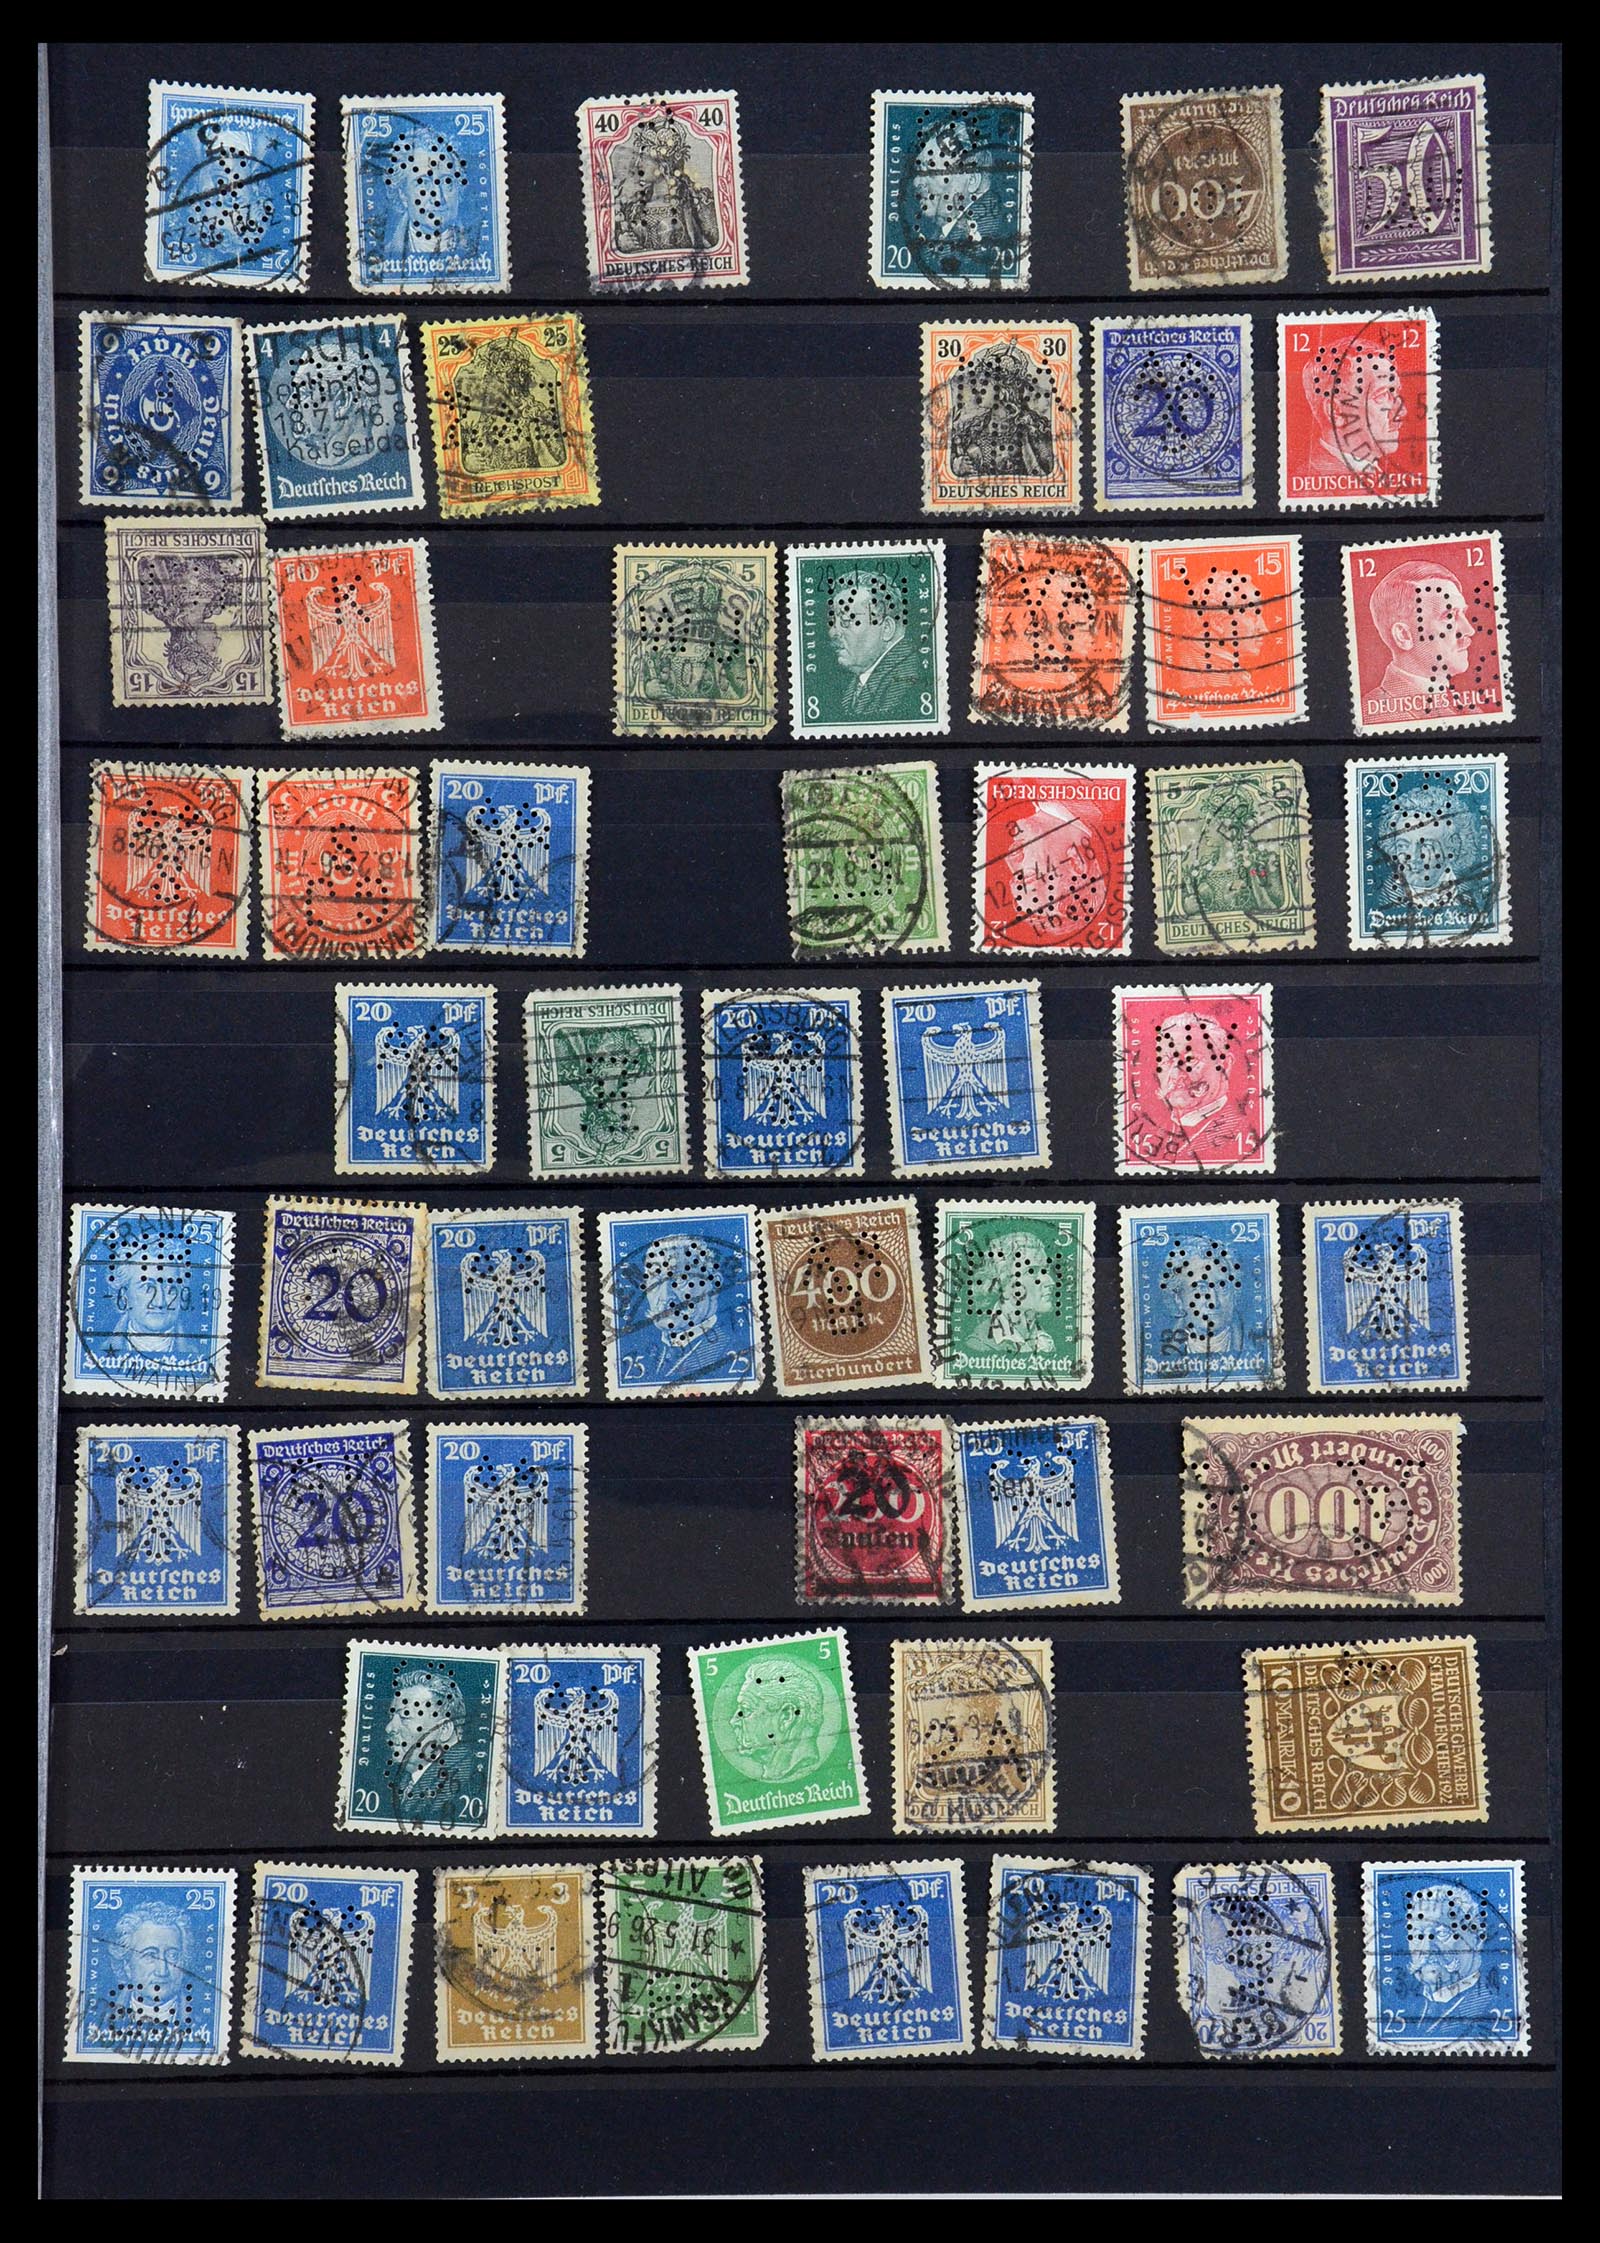 35183 003 - Stamp Collection 35183 German Reich perfins 1880-1945.